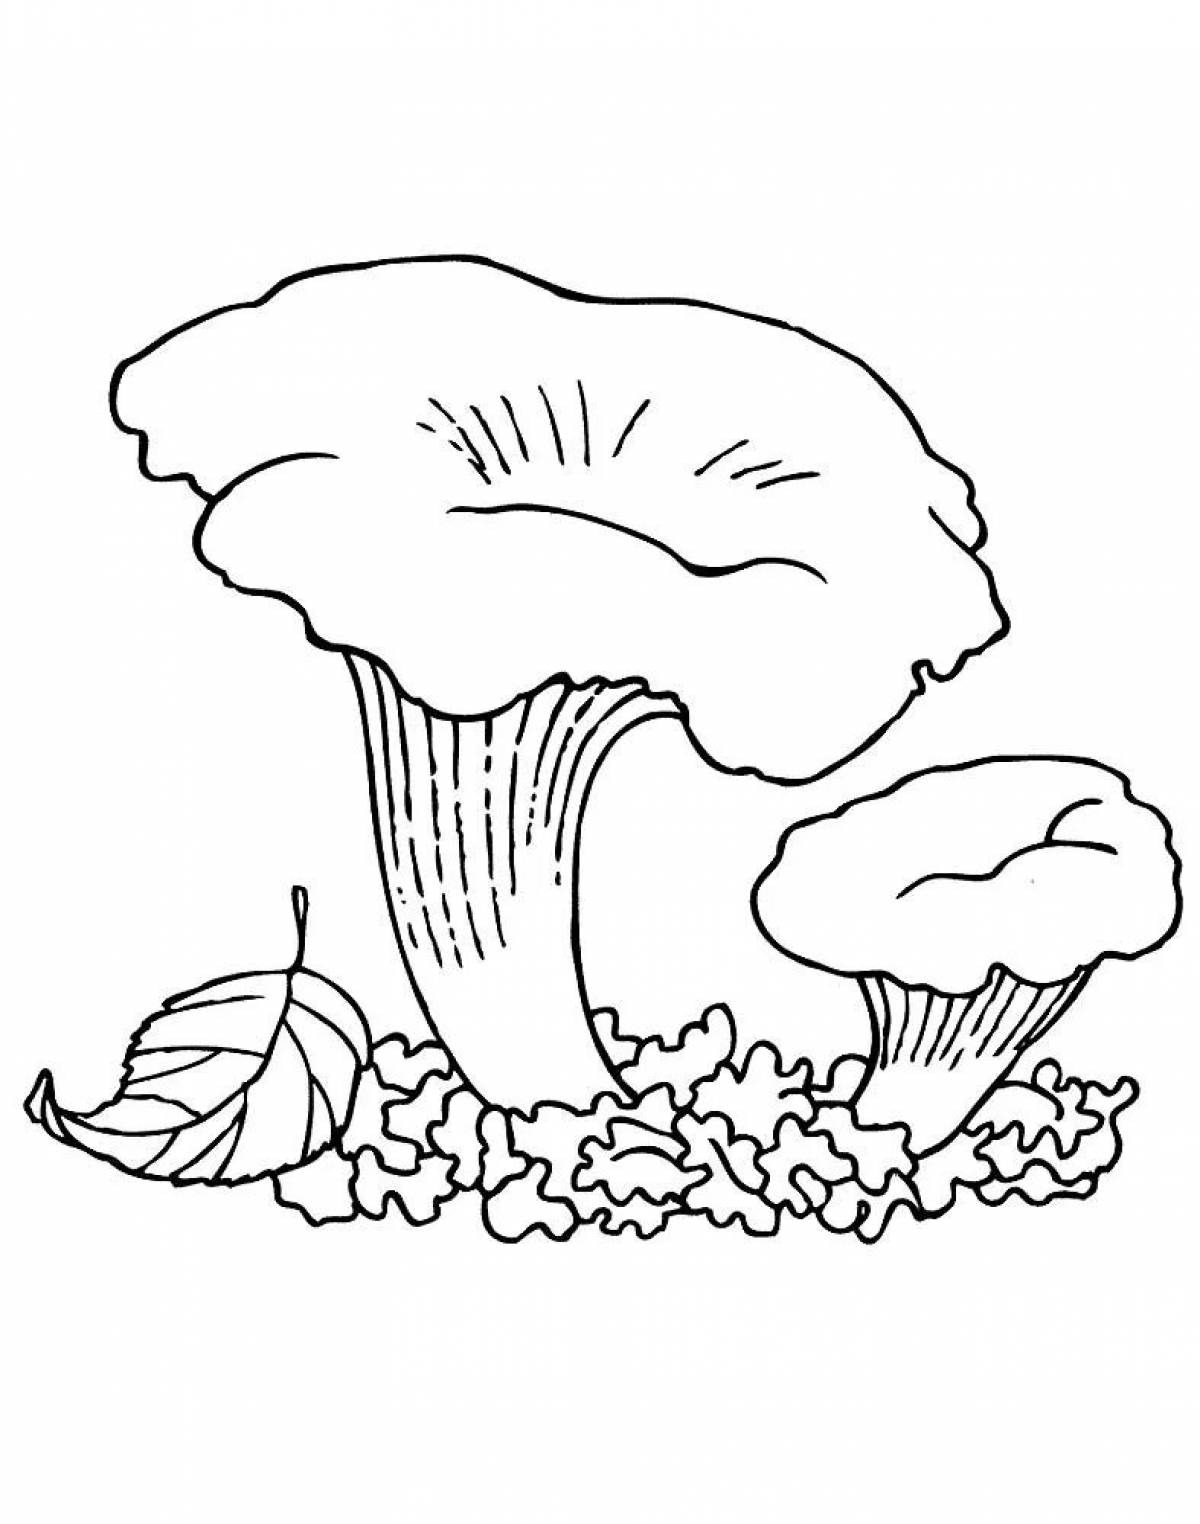 Children's chanterelle mushroom #8